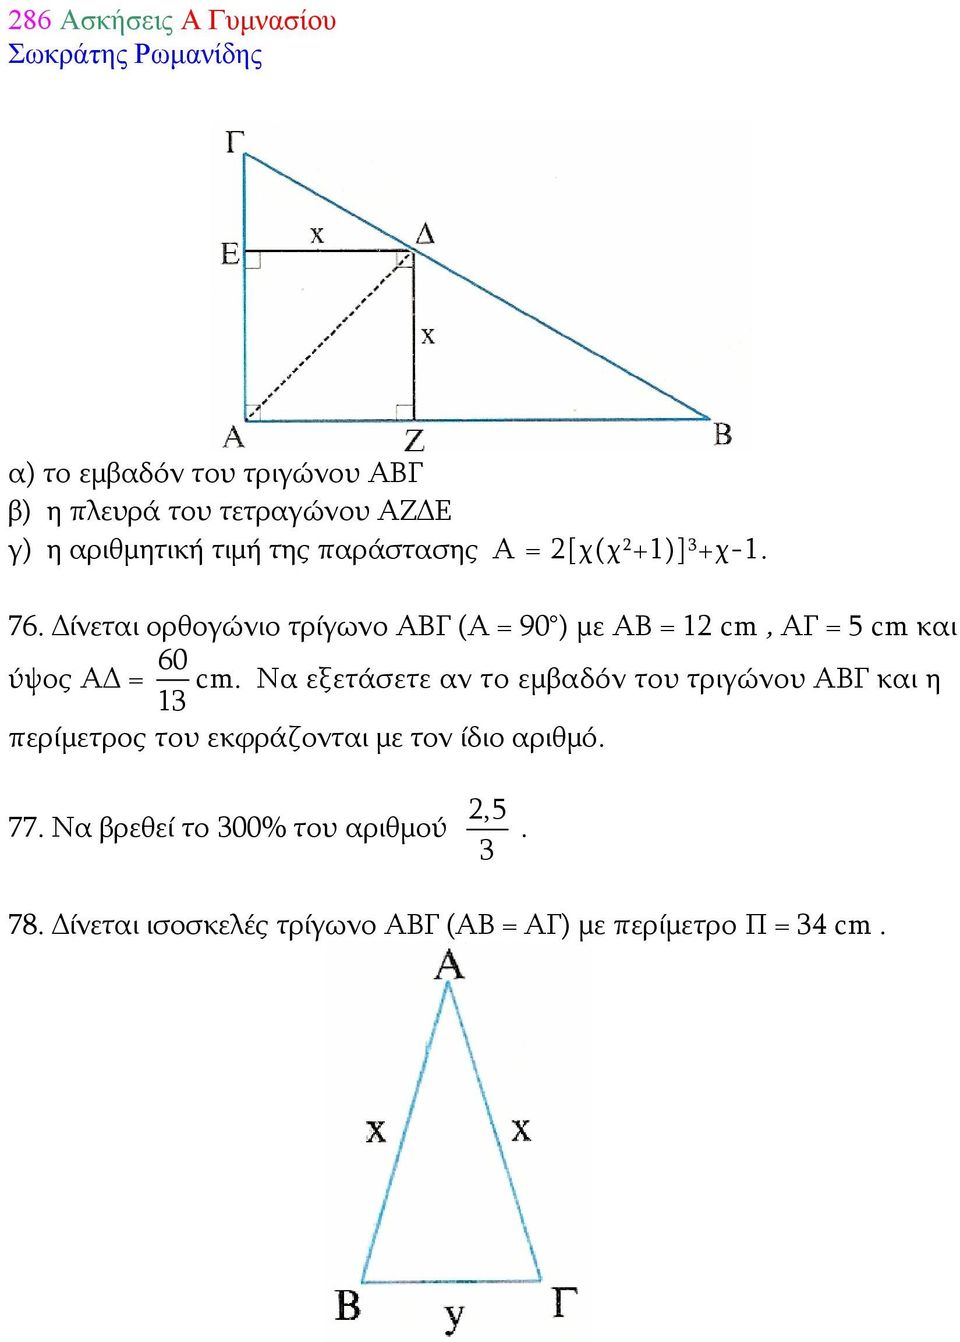 Δίνεται ορθογώνιο τρίγωνο ΑΒΓ (Α = 90 ) με ΑΒ = 12 cm, ΑΓ = 5 cm και ύψος ΑΔ = 60 cm.